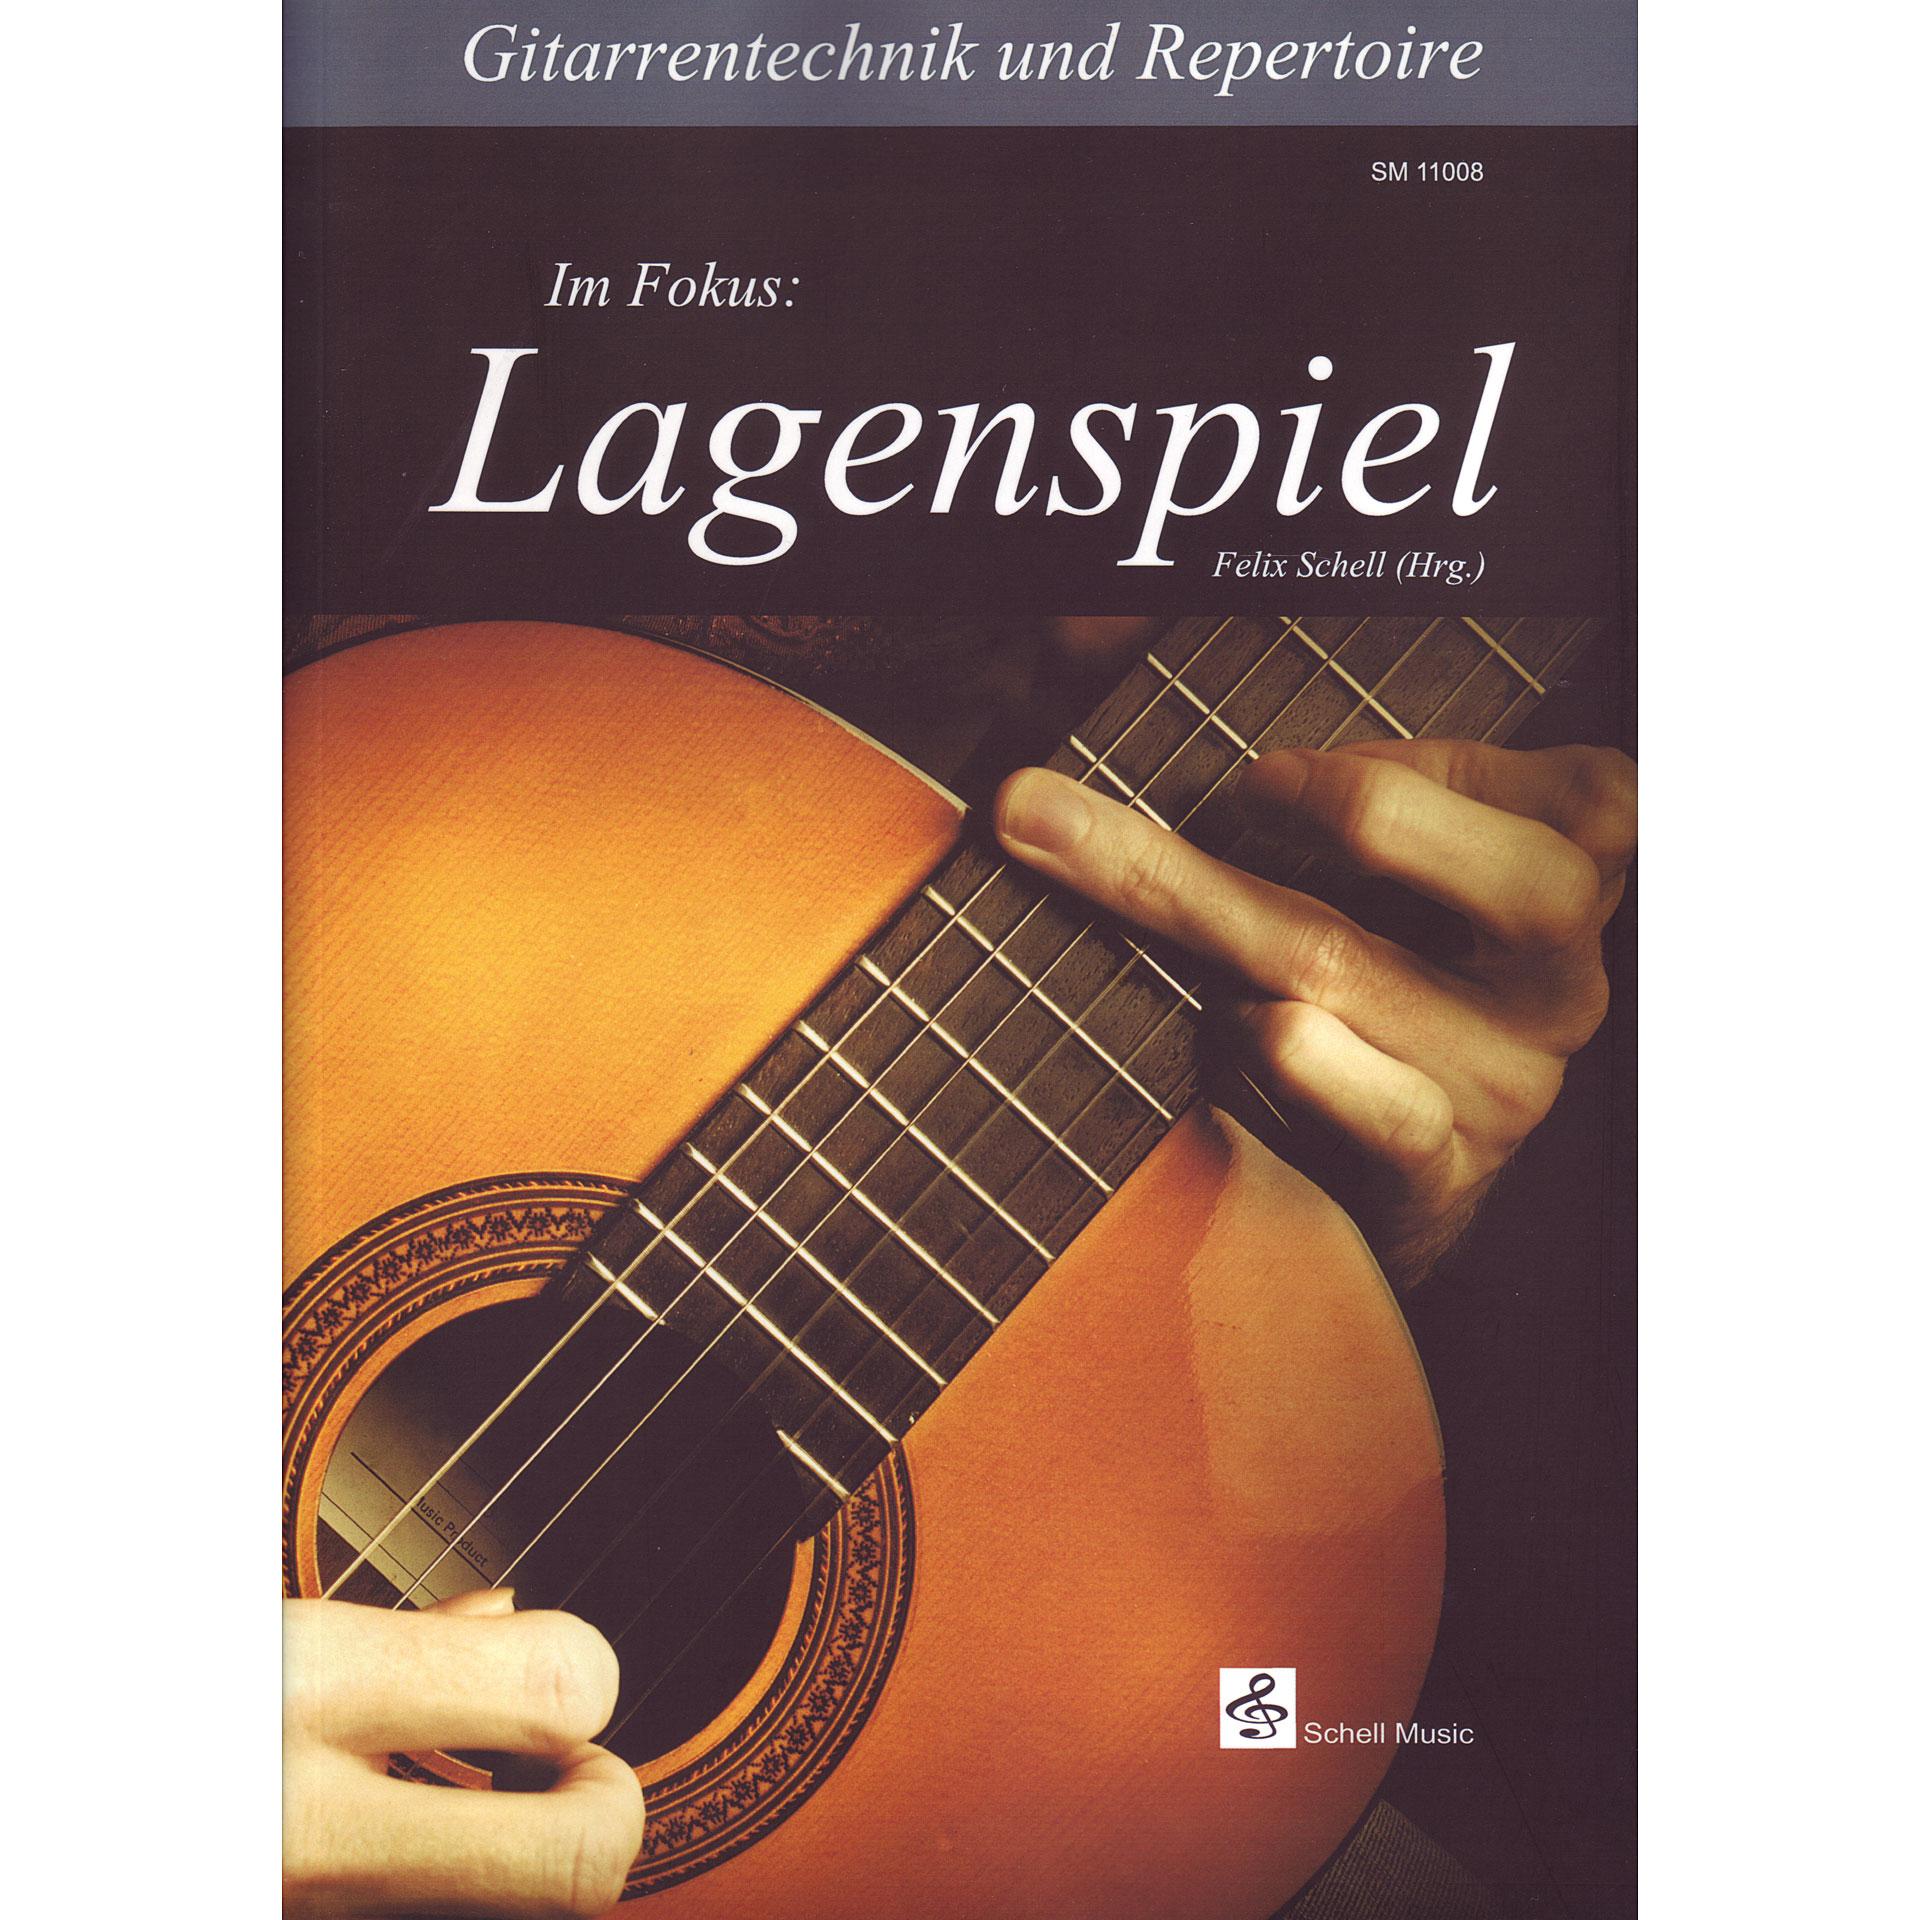 Foto Schell Gitarrentechnik und Repertoire Im Fokus:Lagenspiel, Libros